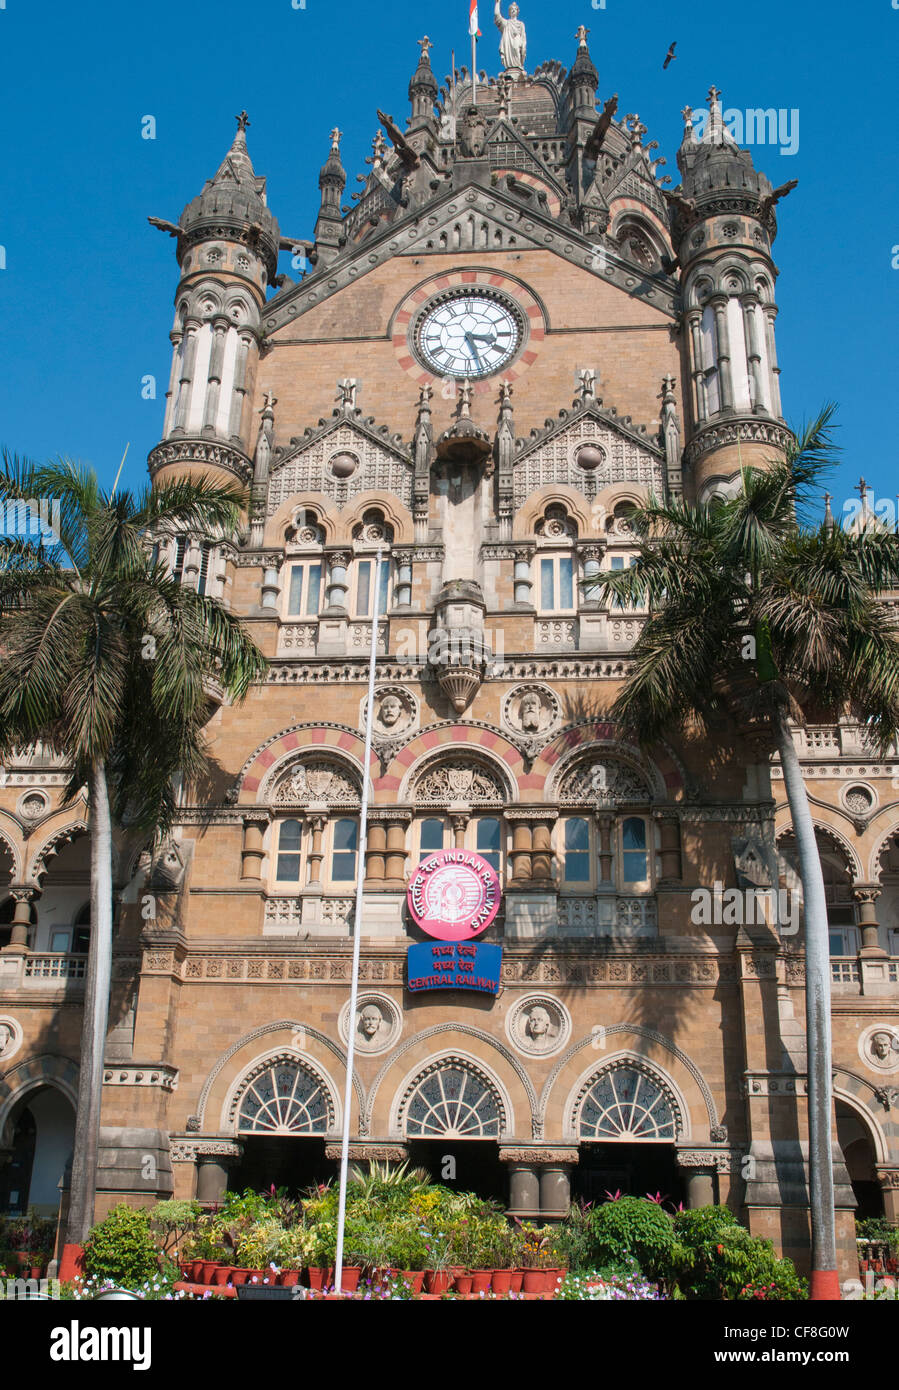 La gare Chhatrapati Shivaji (CST), anciennement Victoria Terminus, l'une des stations de chemin de fer central de Mumbai Banque D'Images